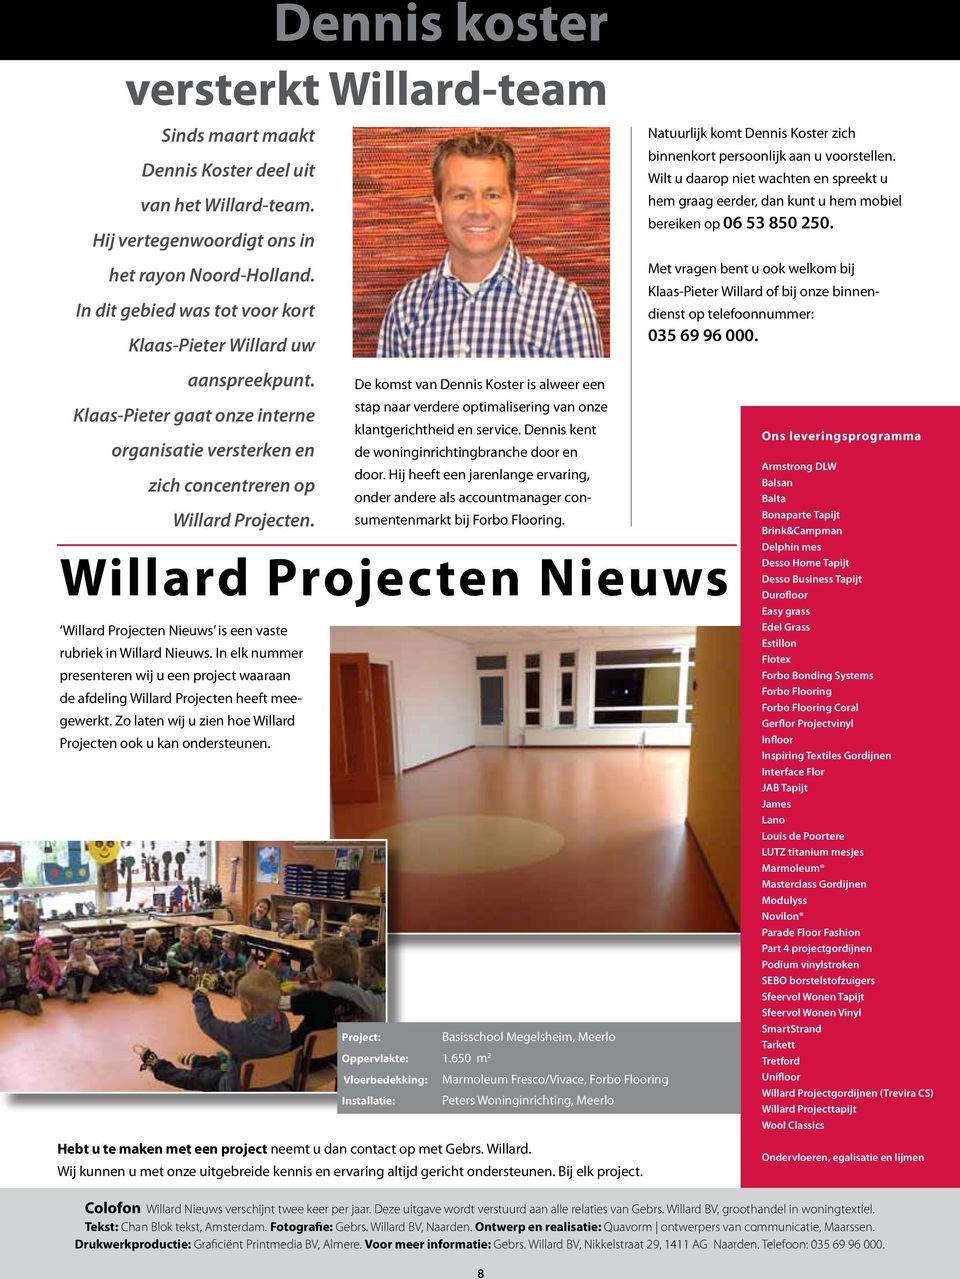 Willard Projecten Nieuws Willard Projecten Nieuws is een vaste rubriek in Willard Nieuws. In elk nummer presenteren wij u een project waaraan de afdeling Willard Projecten heeft meegewerkt.